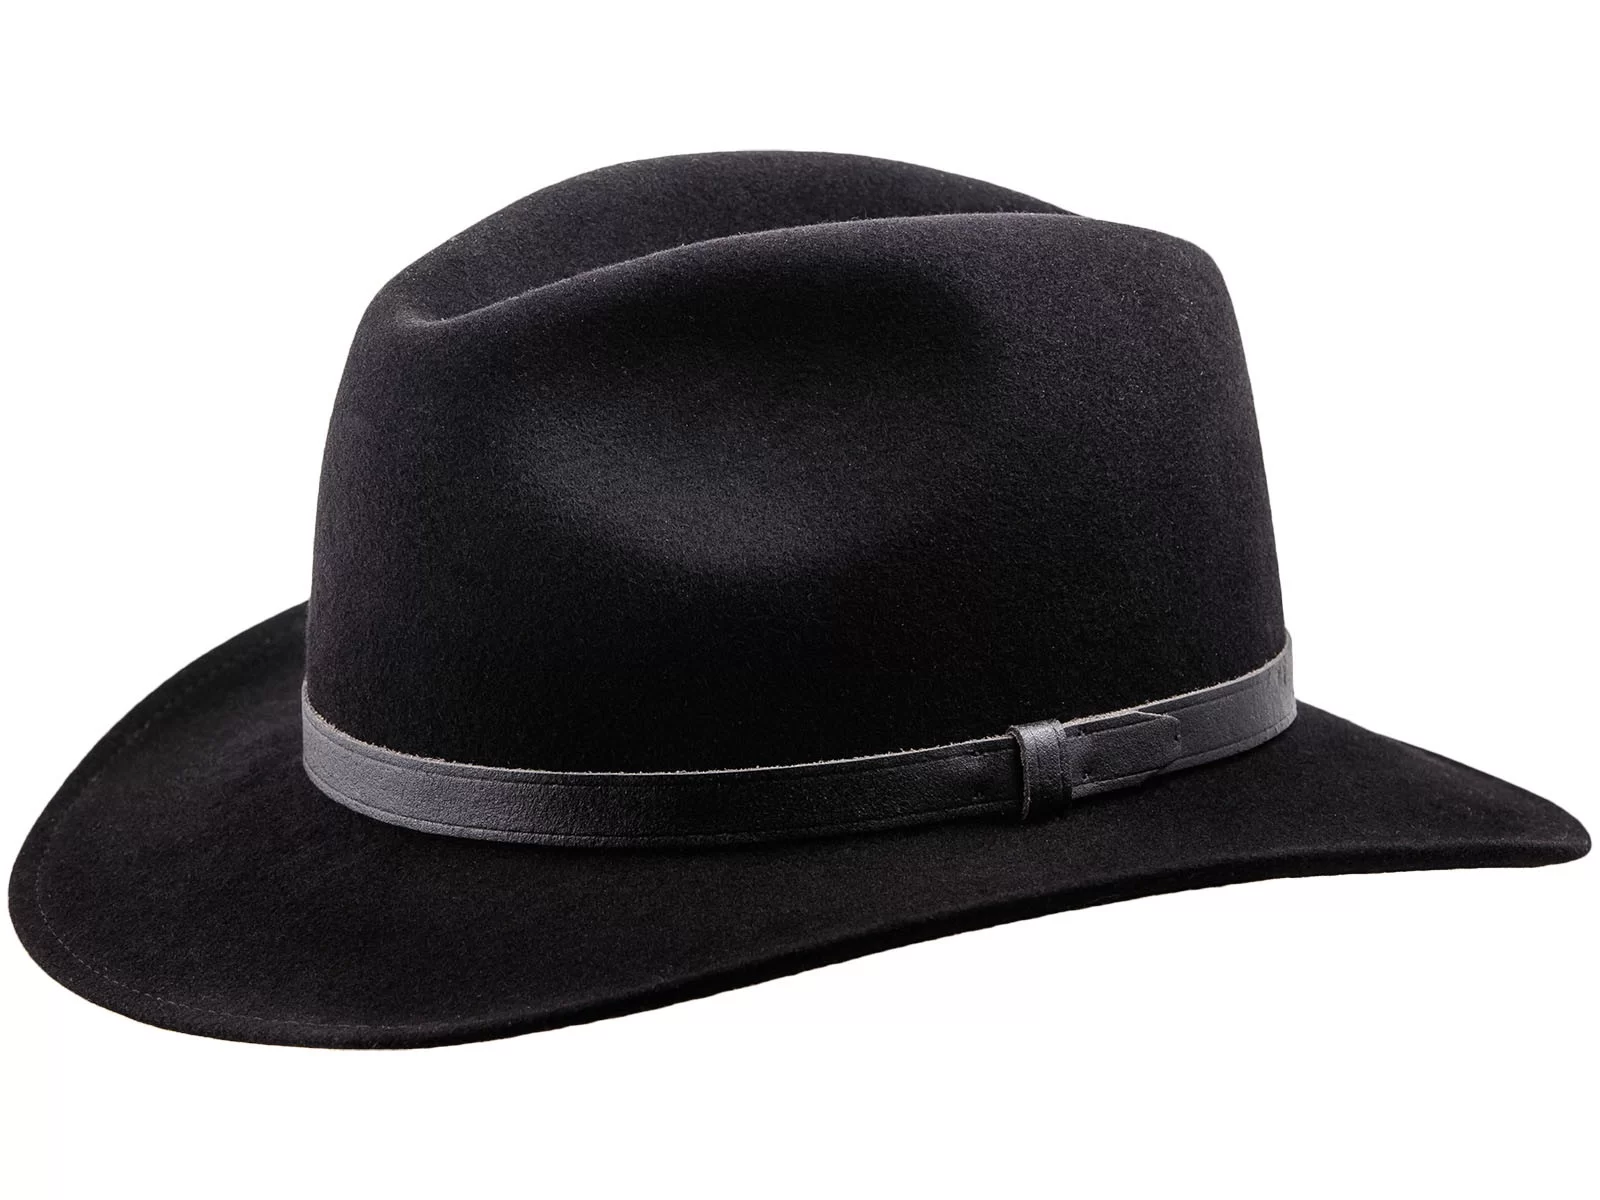 Samaya Sombrero de fieltro negro-gris claro elegante Accesorios Sombreros Sombreros de fieltro 